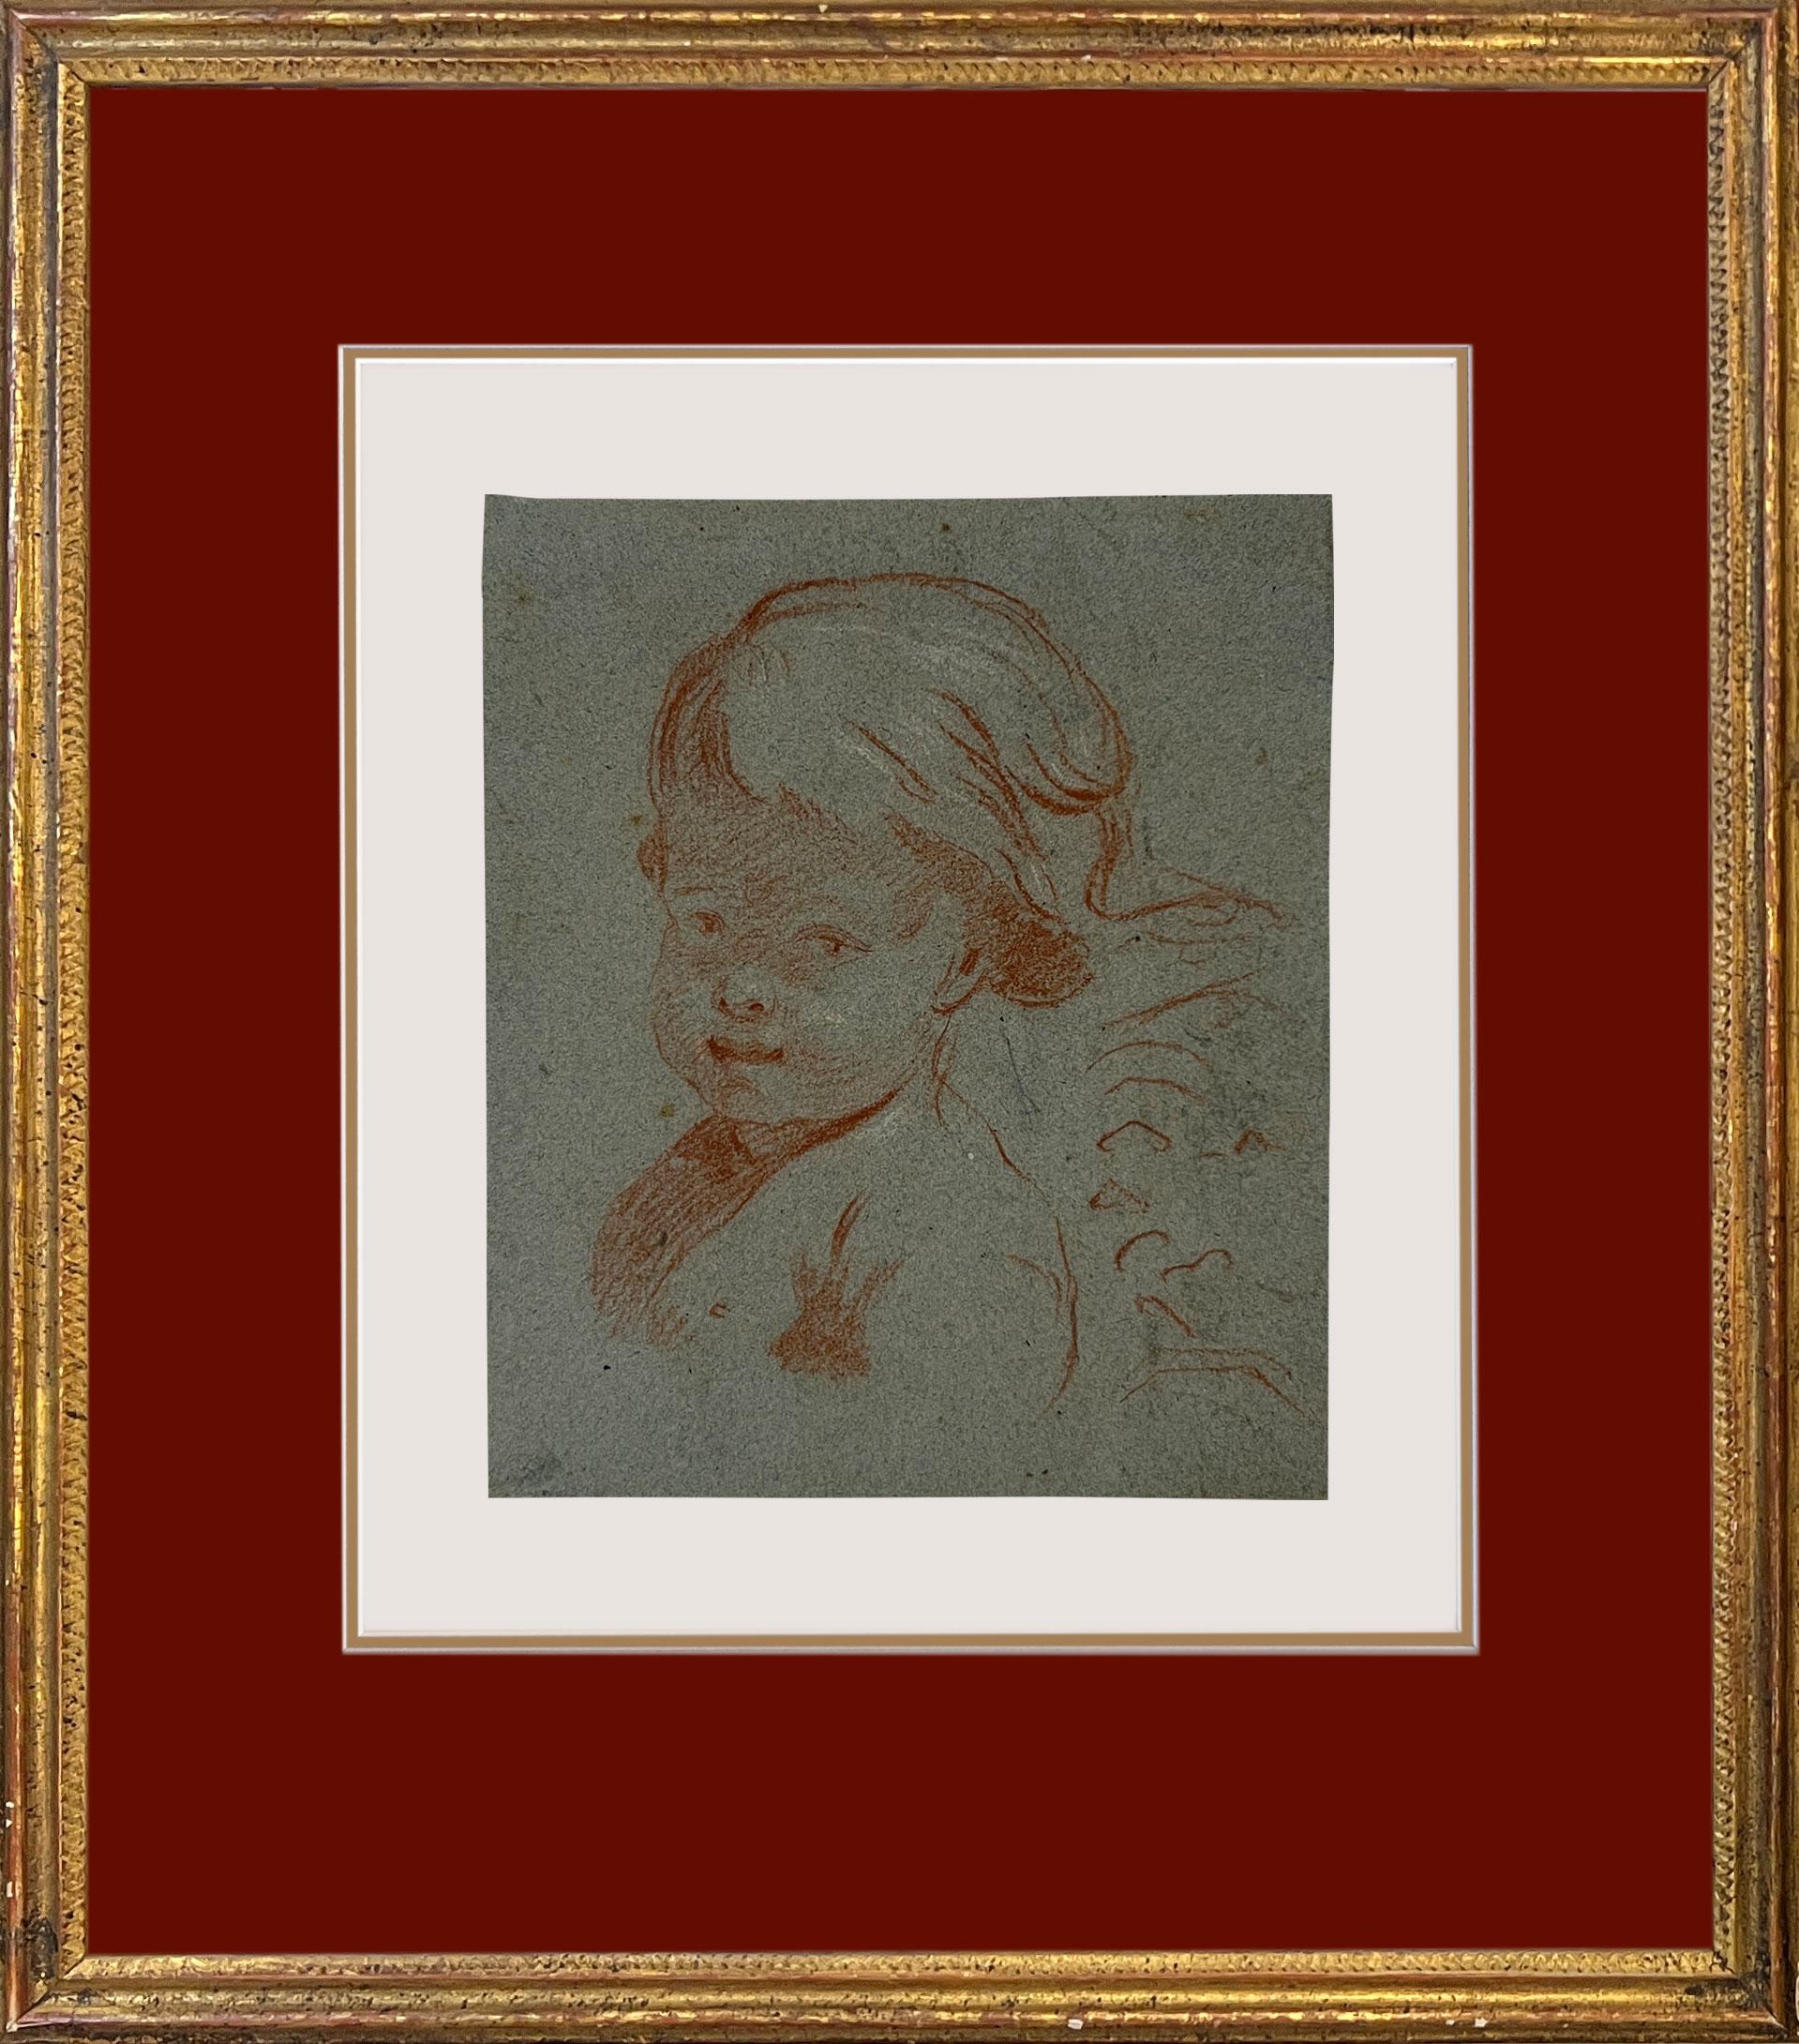 Kreis um François Boucher (Französisch 1703 - 1770), Studie eines Kindes.
Dieses bezaubernde Werk ist wahrscheinlich eine Studie für ein Gemälde. Es zeigt ein Kind, das einen wogenden Stoff über Kopf und Rücken trägt. Dies ist eine Komposition, die